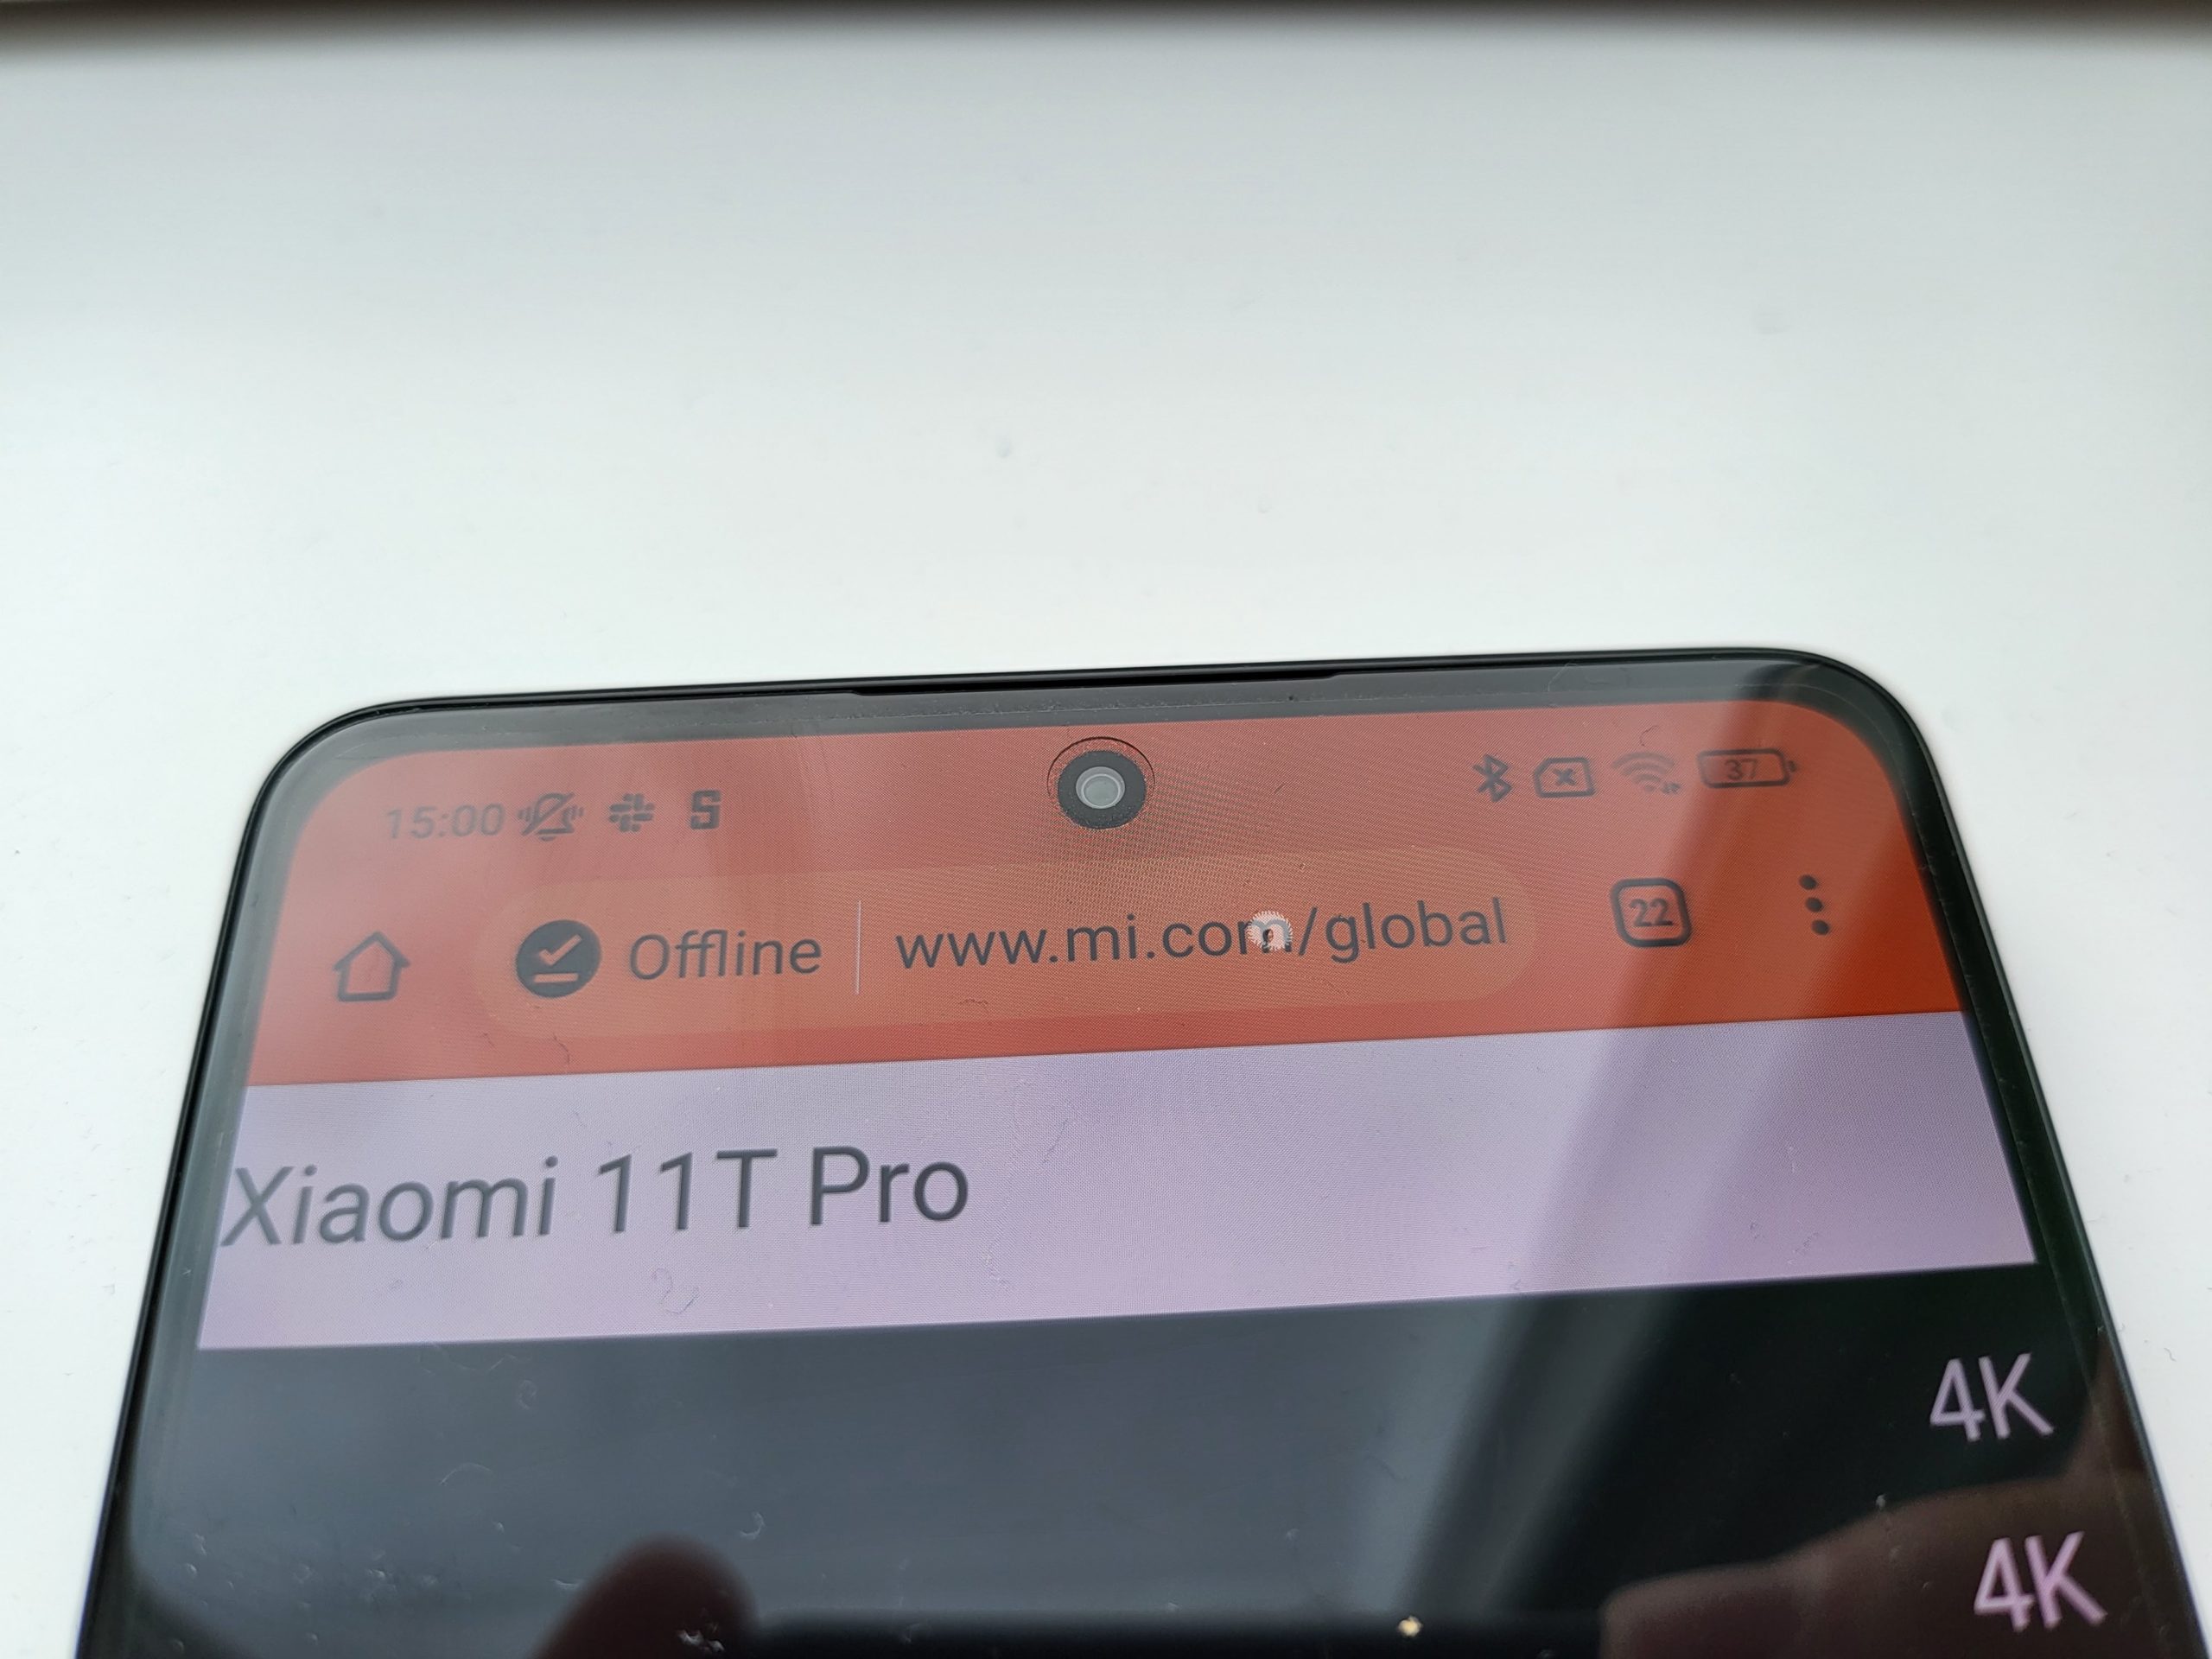 Xiaomi 11T Pro review, a flagship killer?